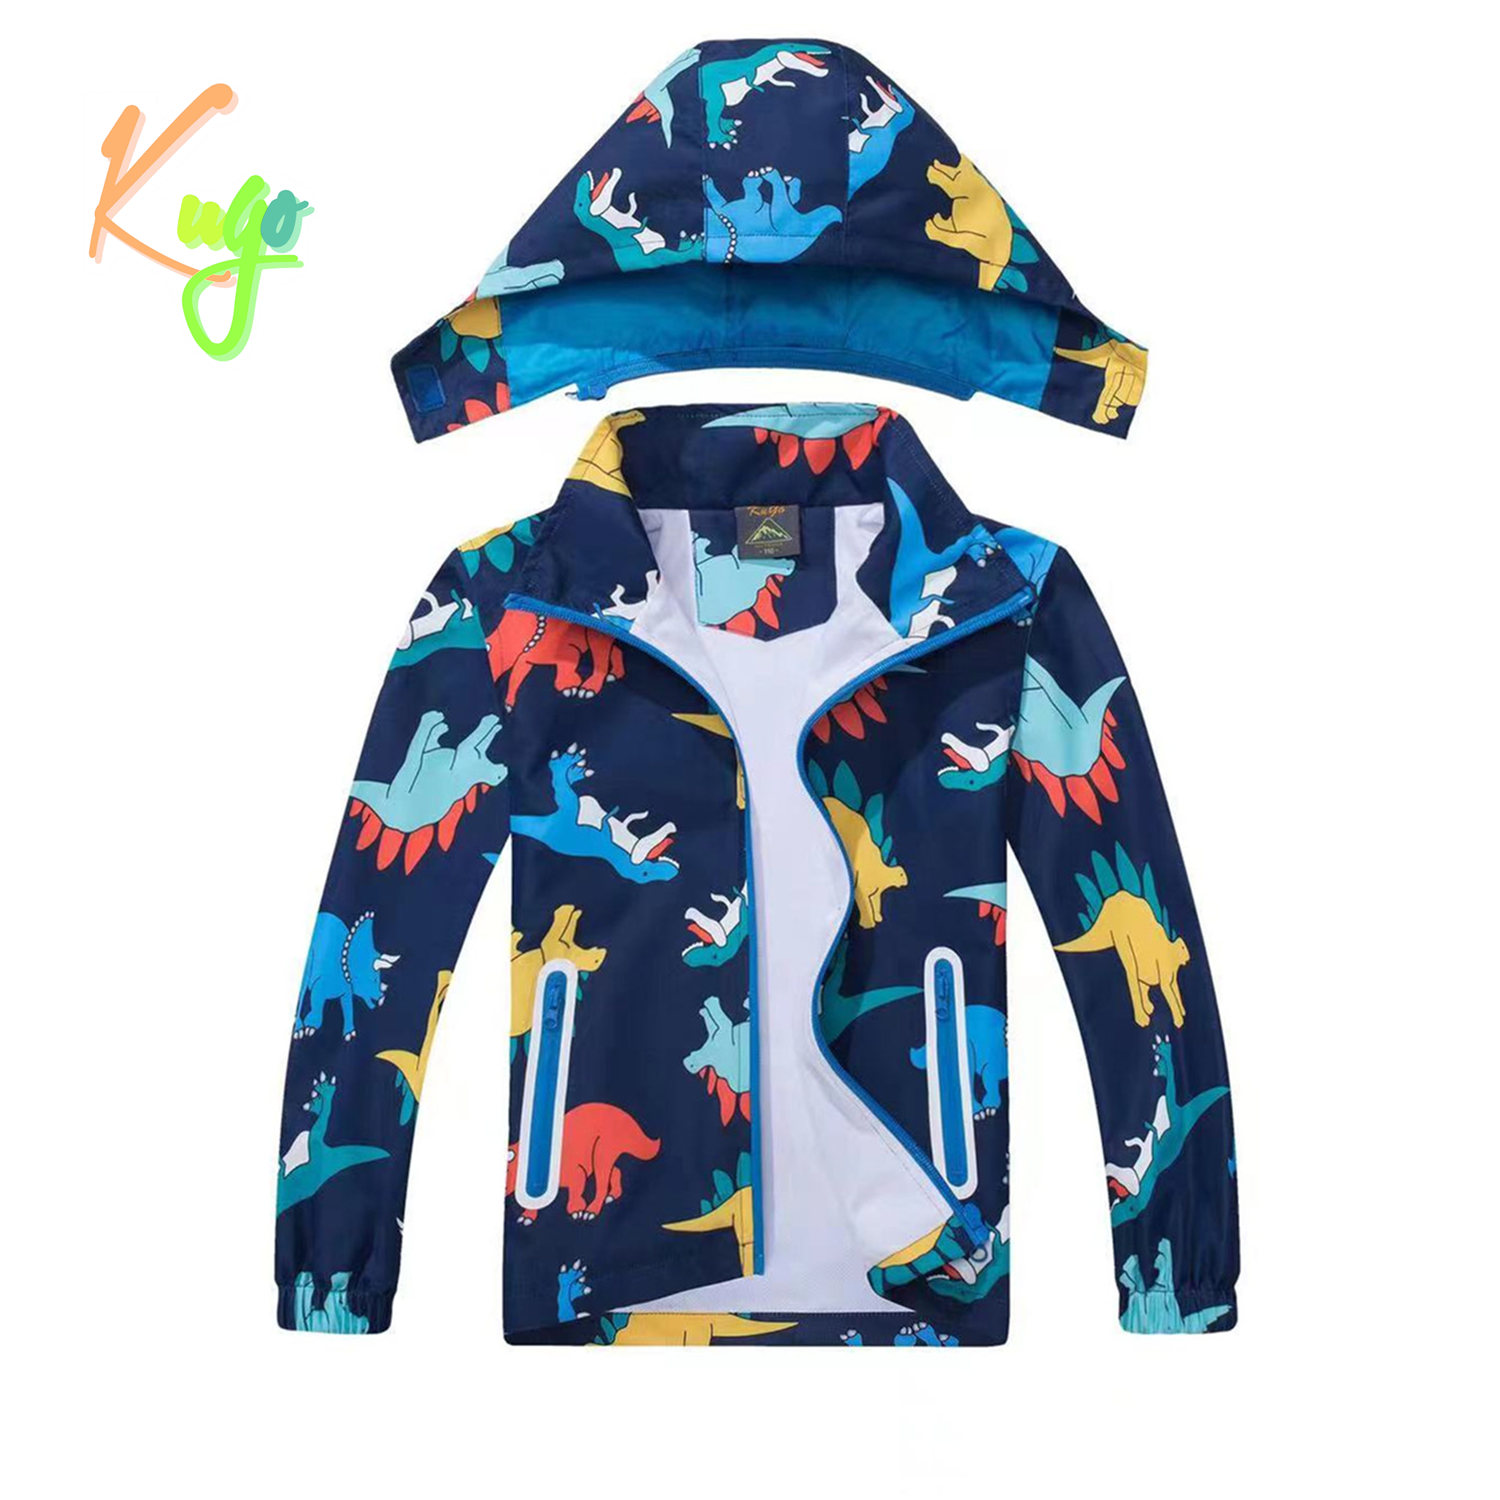 Chlapecká jarní, podzimní bunda - KUGO B2849, tmavě modrá / dinosaurus Barva: Modrá tmavě, Velikost: 116